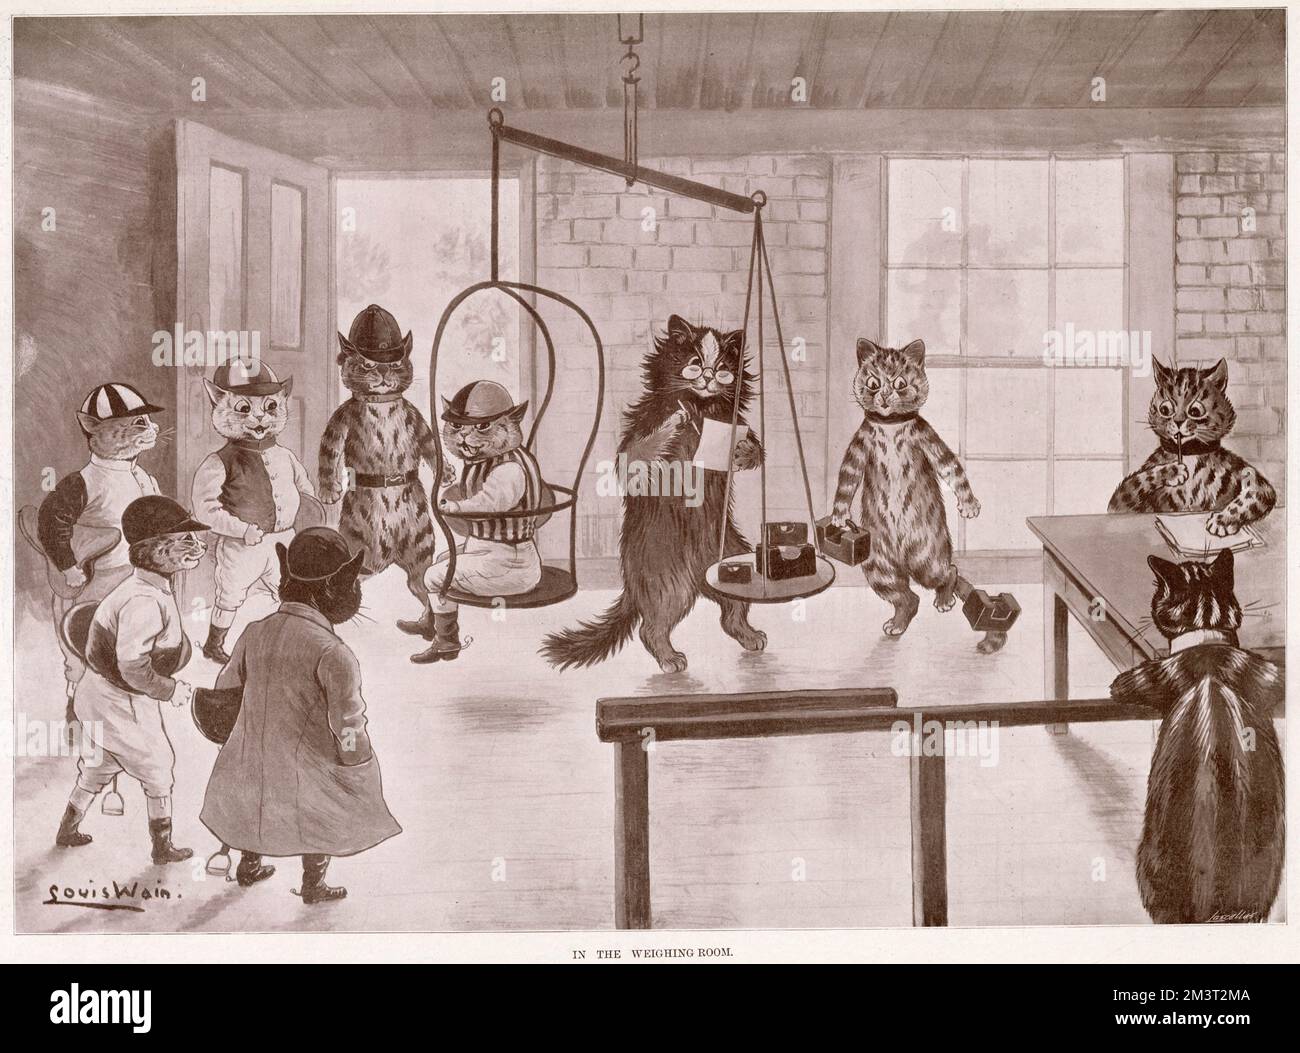 Illustration von Louis Wain, zeigt Katzen als Menschen, die vor einem Pferderennen gewogen werden. Datum: 1901 Stockfoto